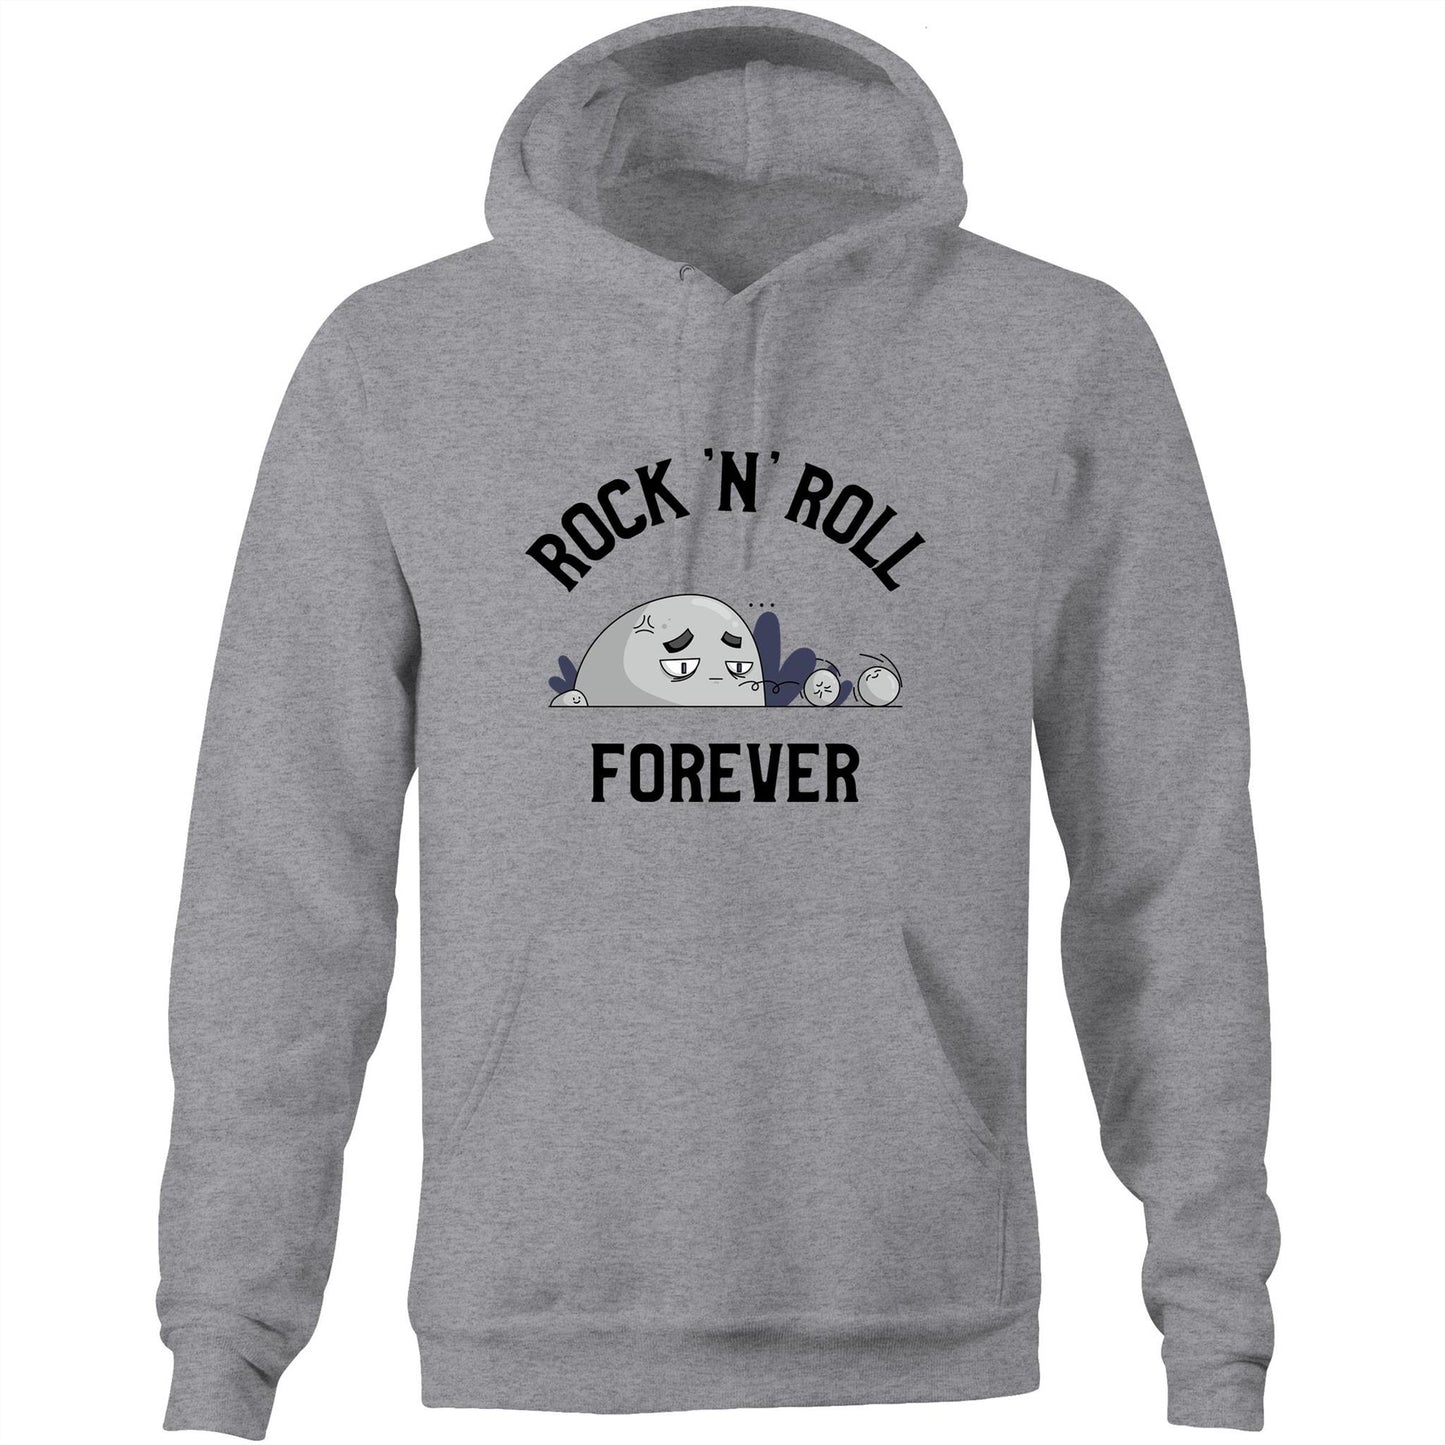 Rock 'N' Roll Forever - Pocket Hoodie Sweatshirt Grey Marle Hoodie Music